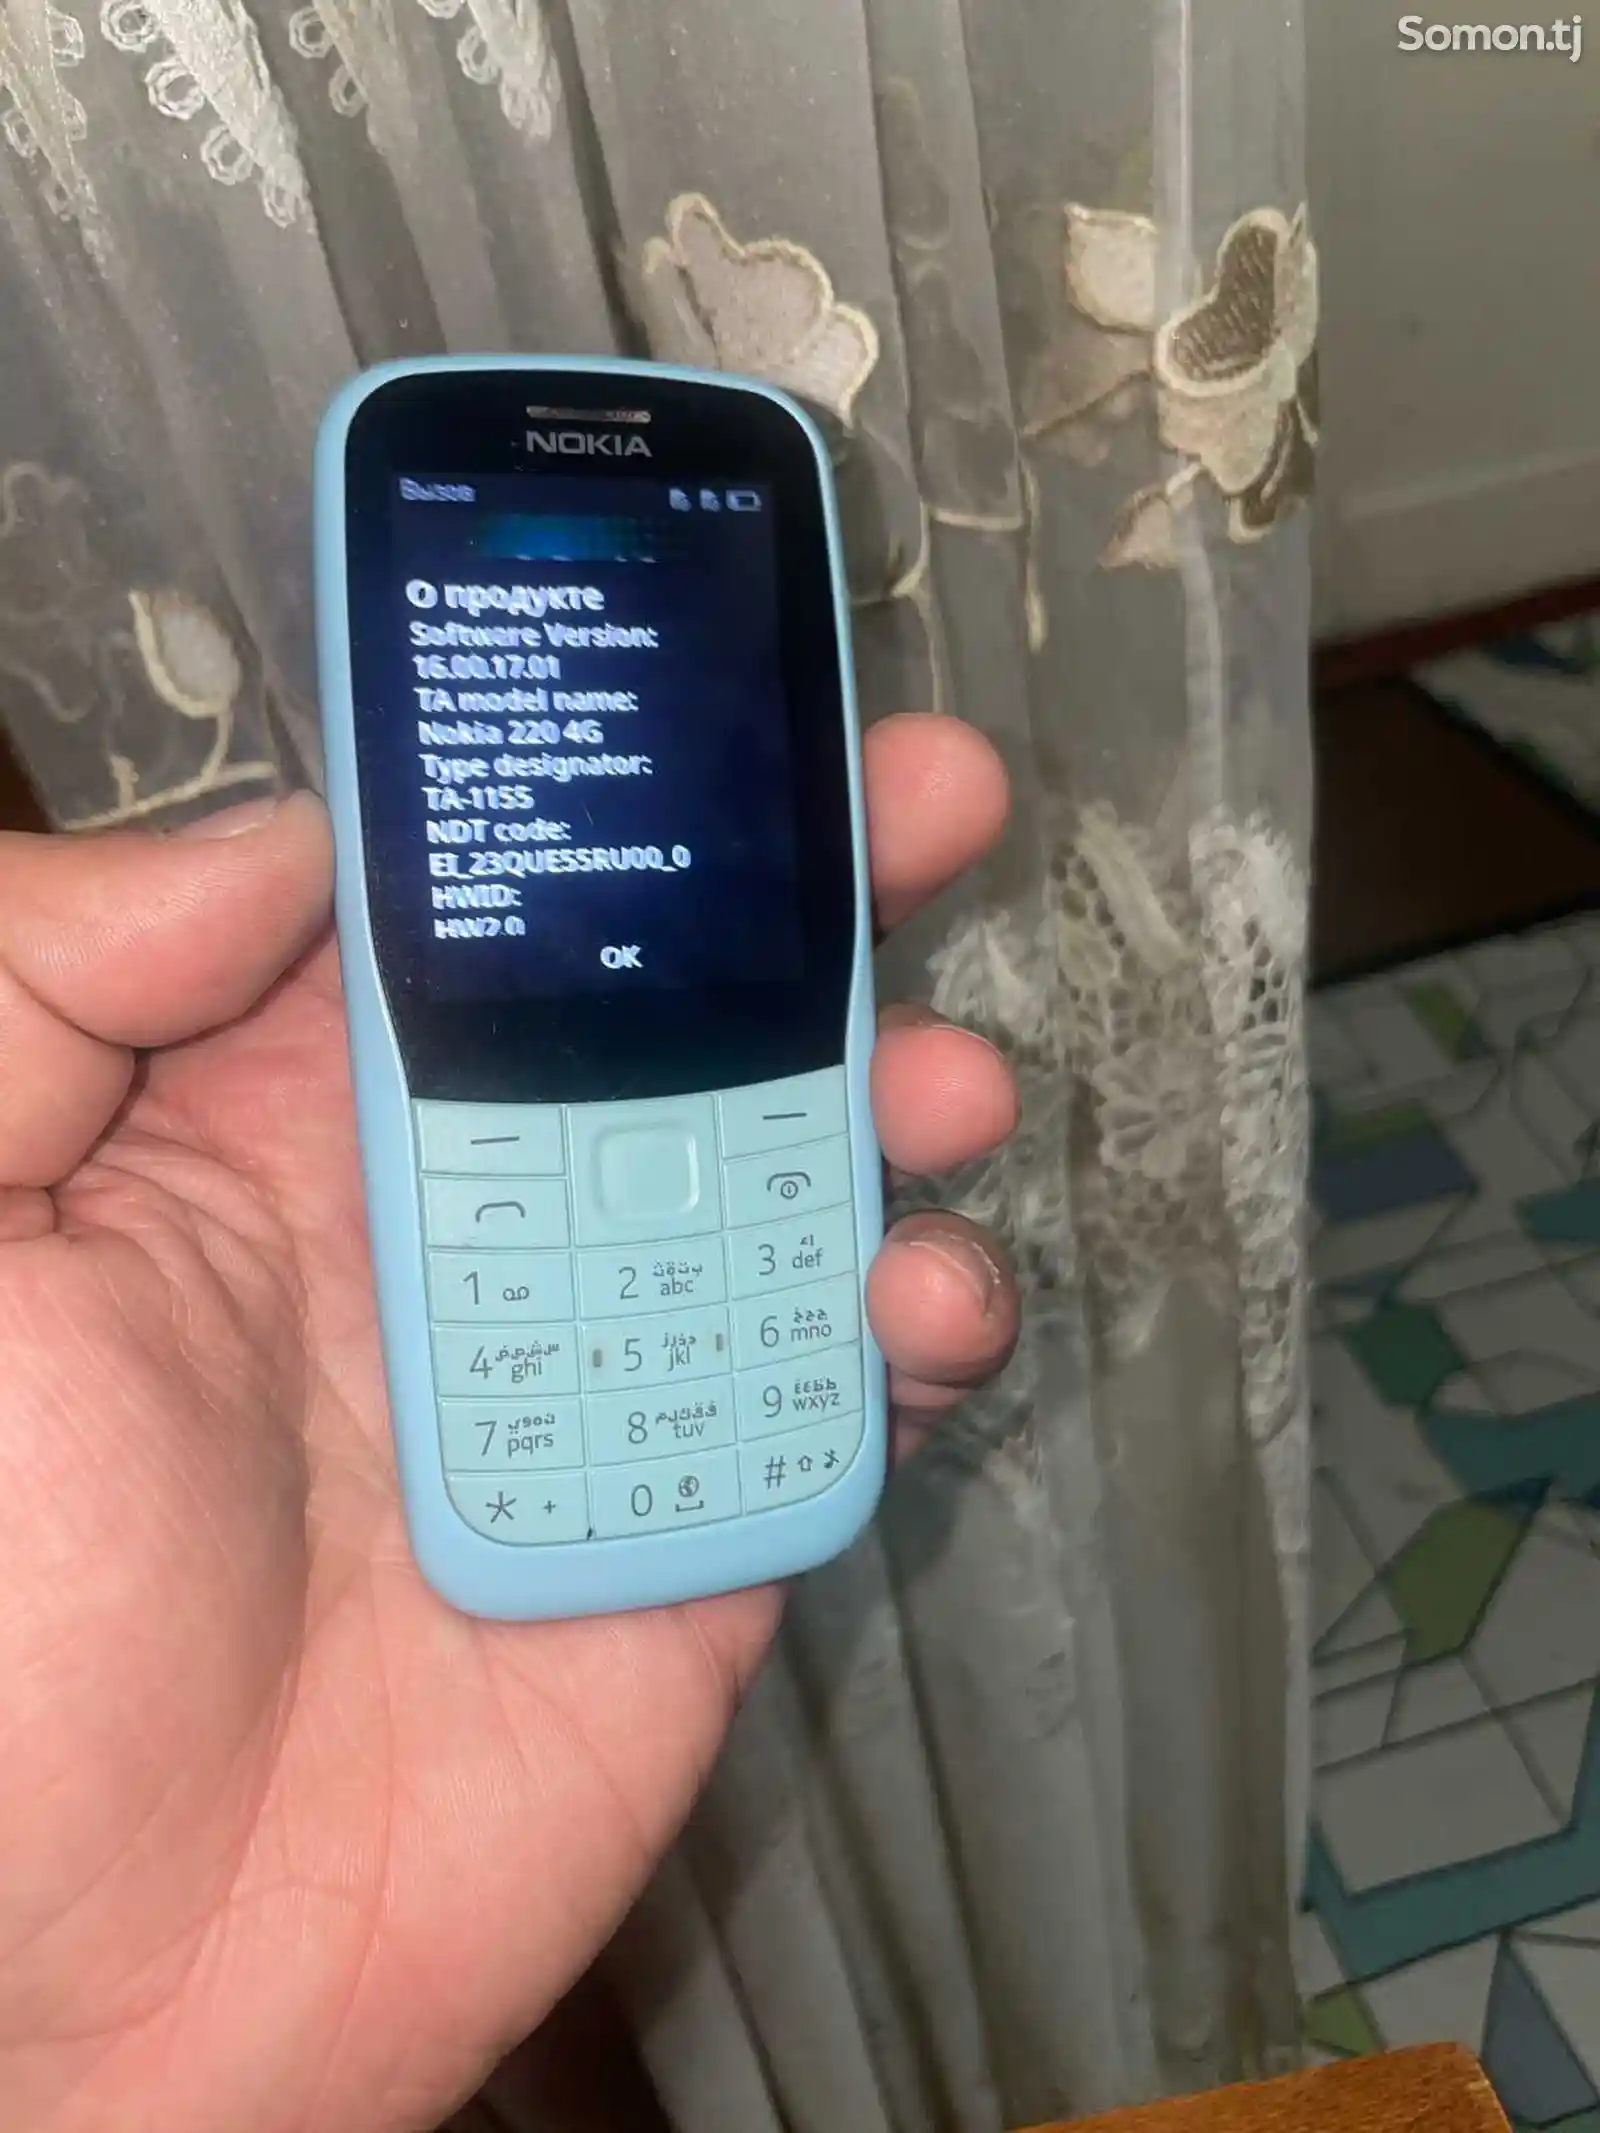 Nokia 220-1